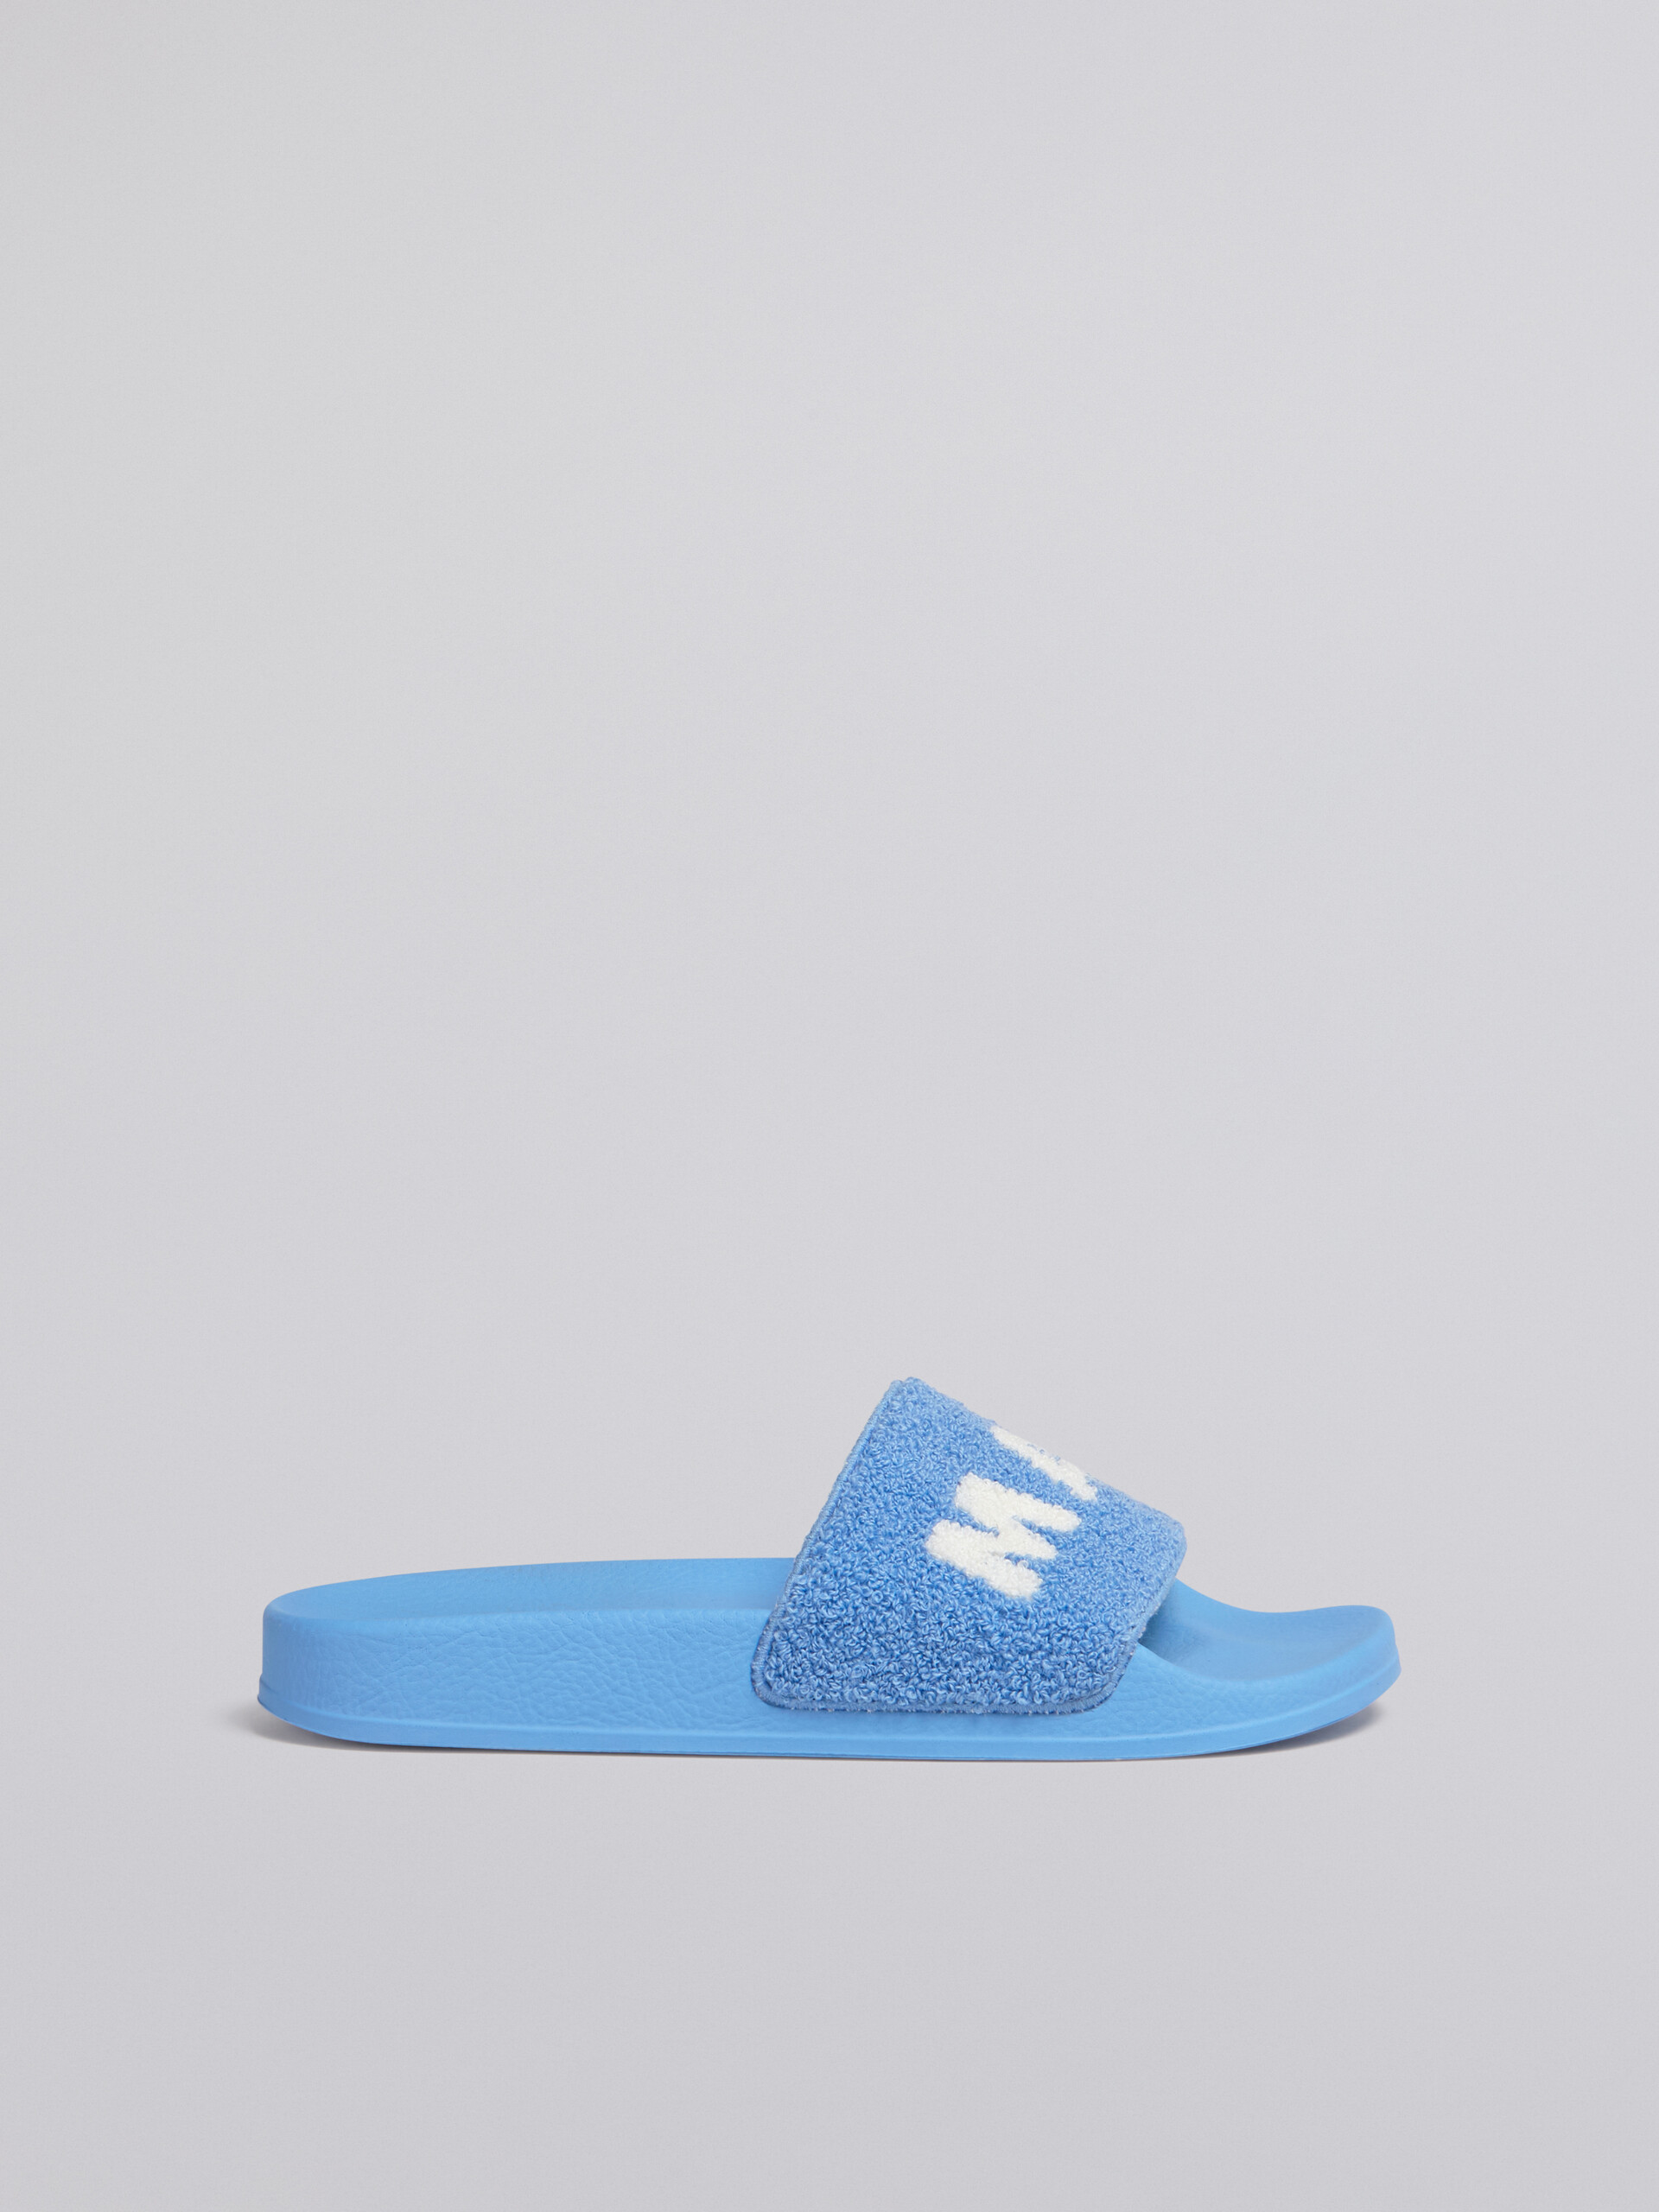 Sandalo in gomma con tomaia in spugna azzurro e bianco - Sandali - Image 1